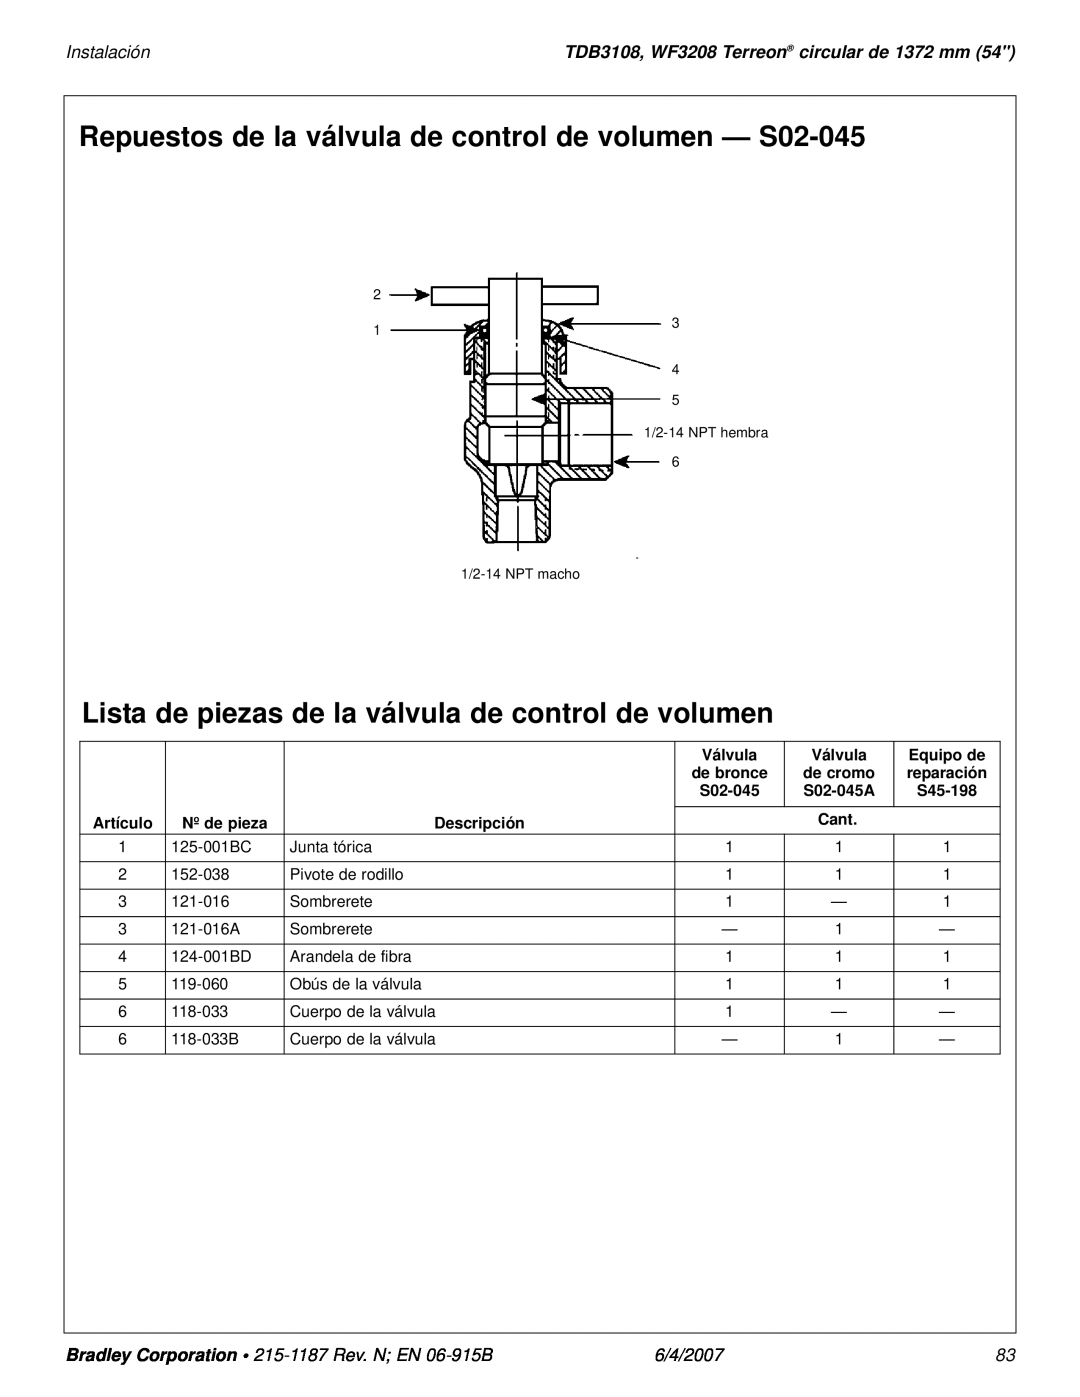 Bradley Smoker TDB3108 installation manual Repuestos de la válvula de control de volumen - S02-045, Instalación, 6/4/2007 